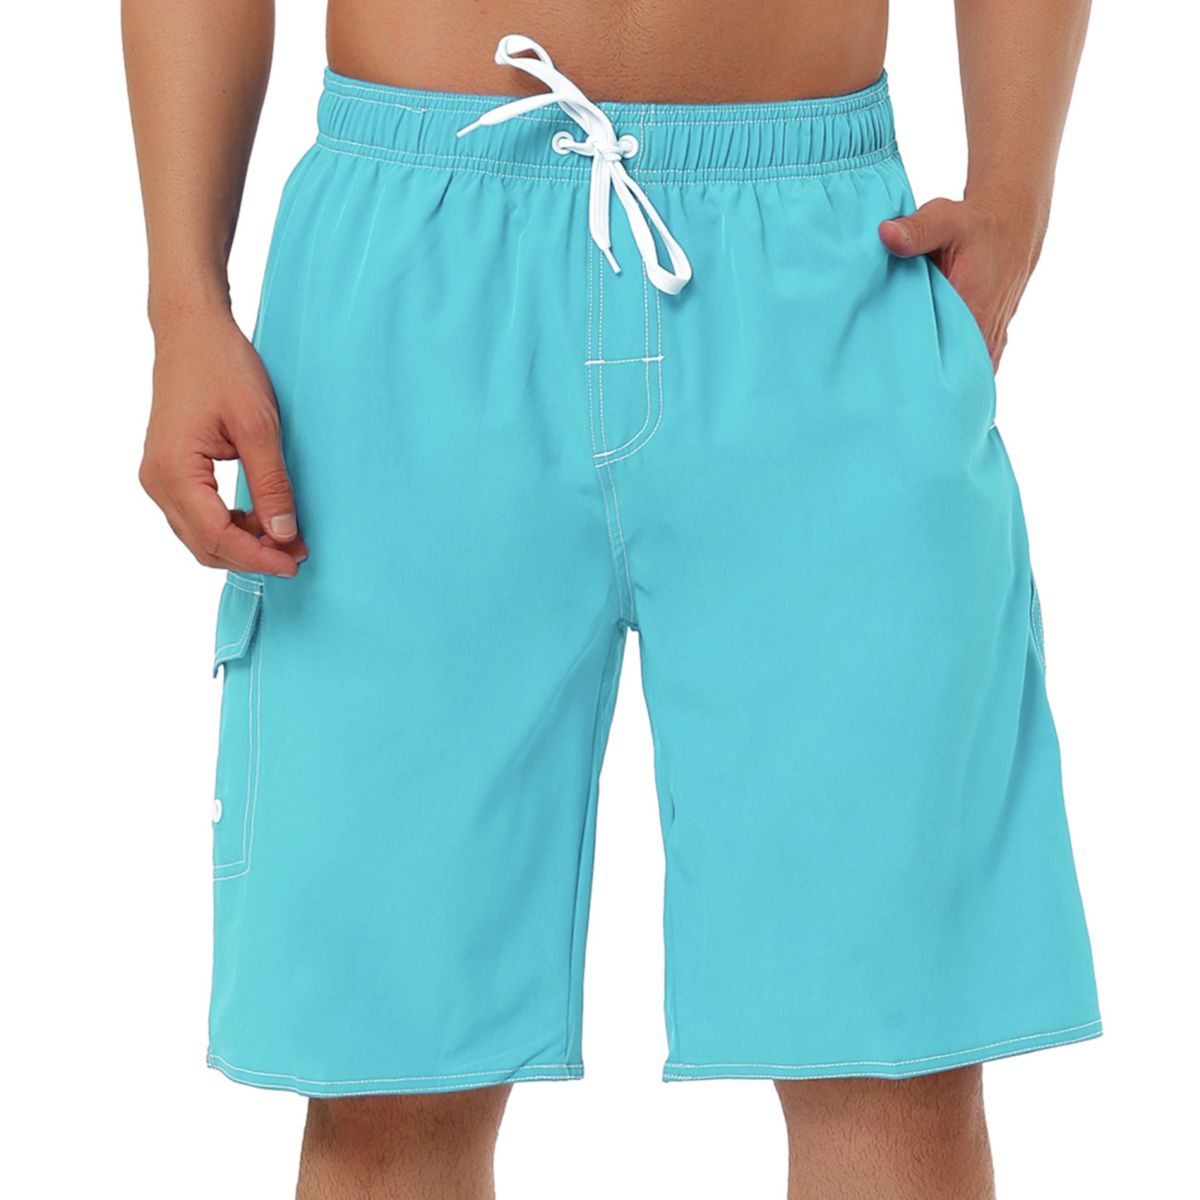 Мужские шорты, летние шорты для плавания с эластичной резинкой на талии, пляжные шорты для плавания Lars Amadeus